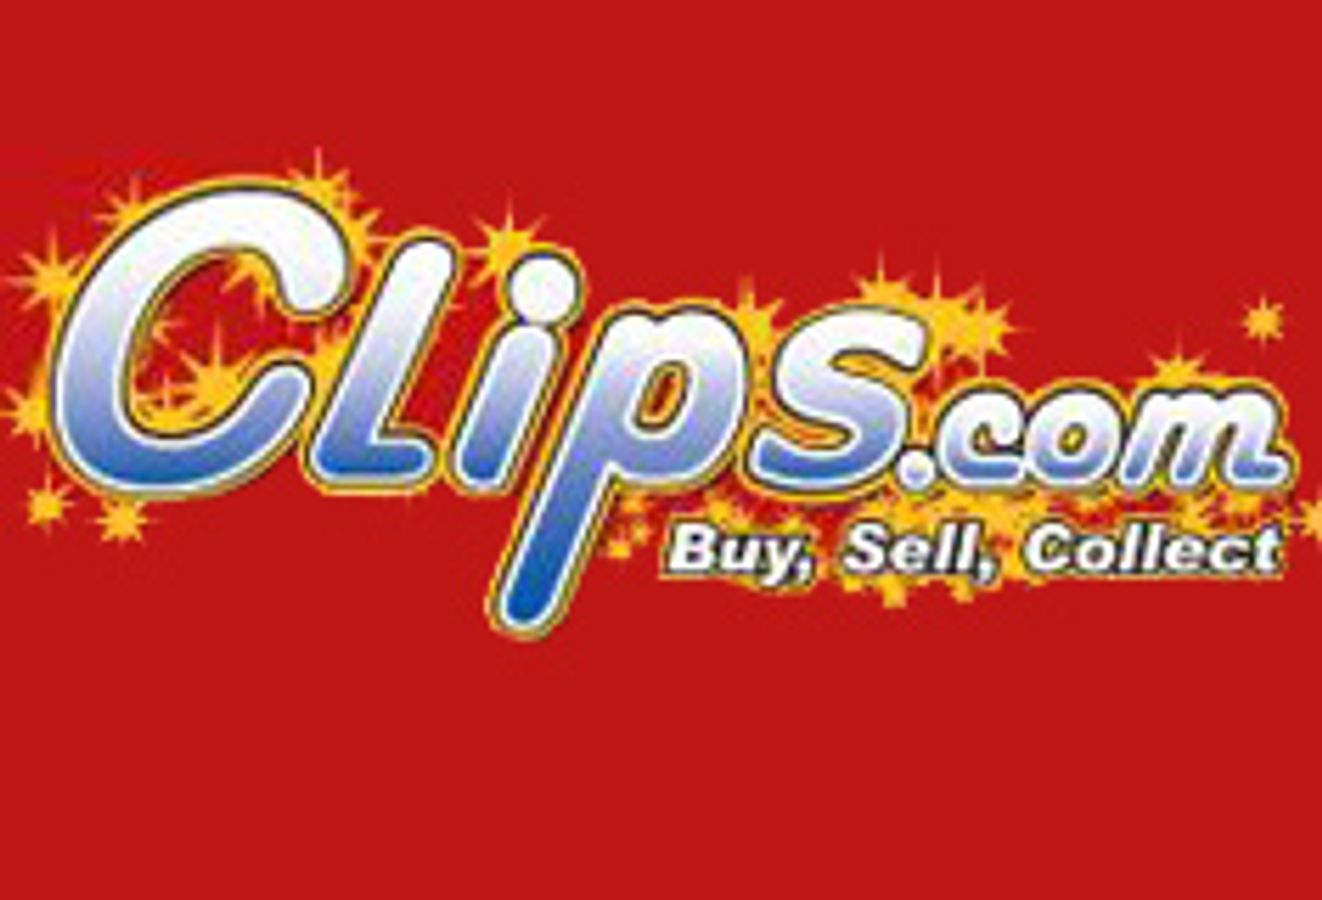 clips.com